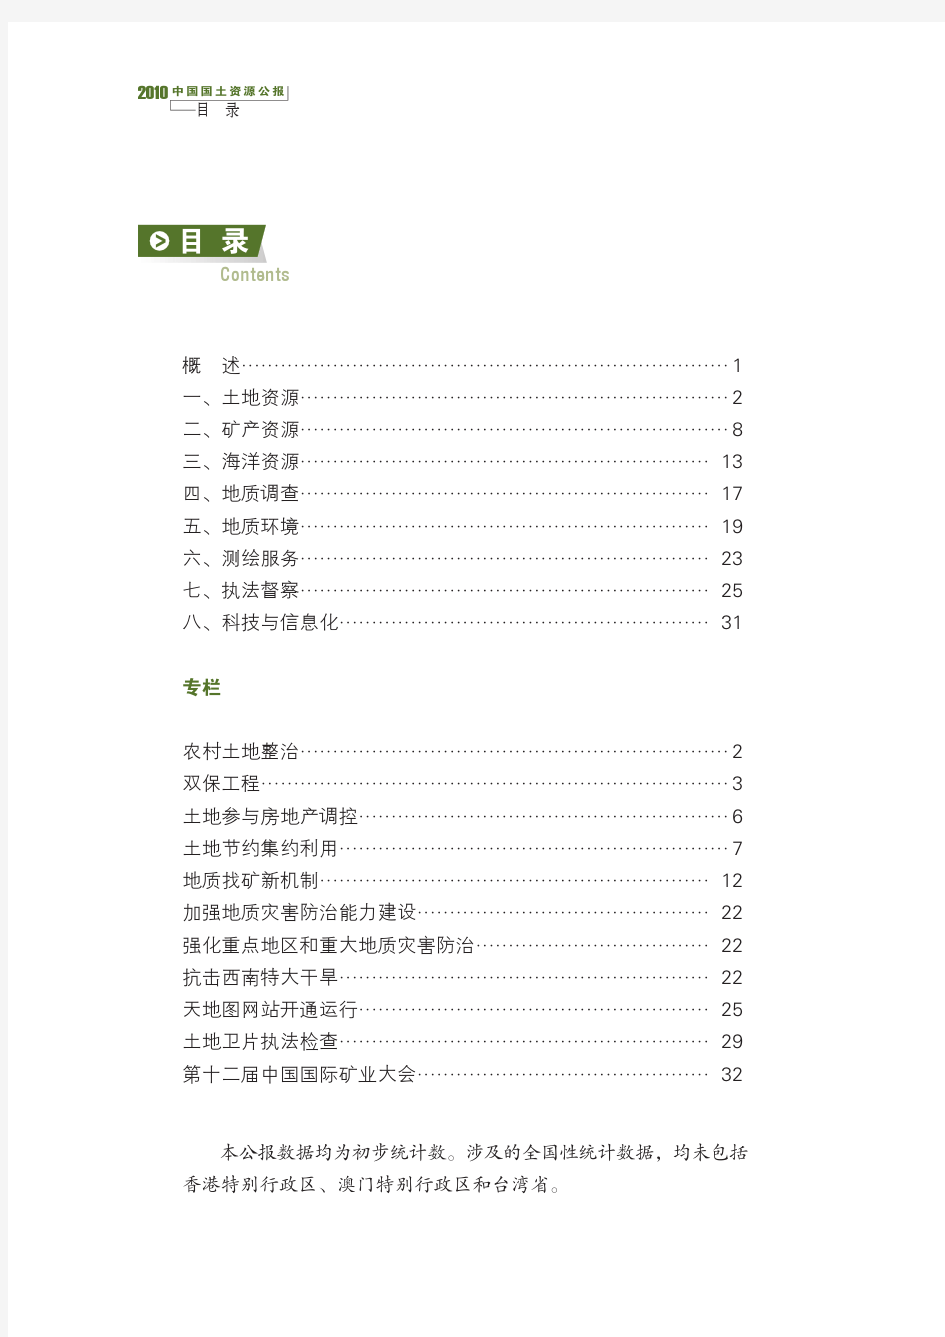 2010中国国土资源公报